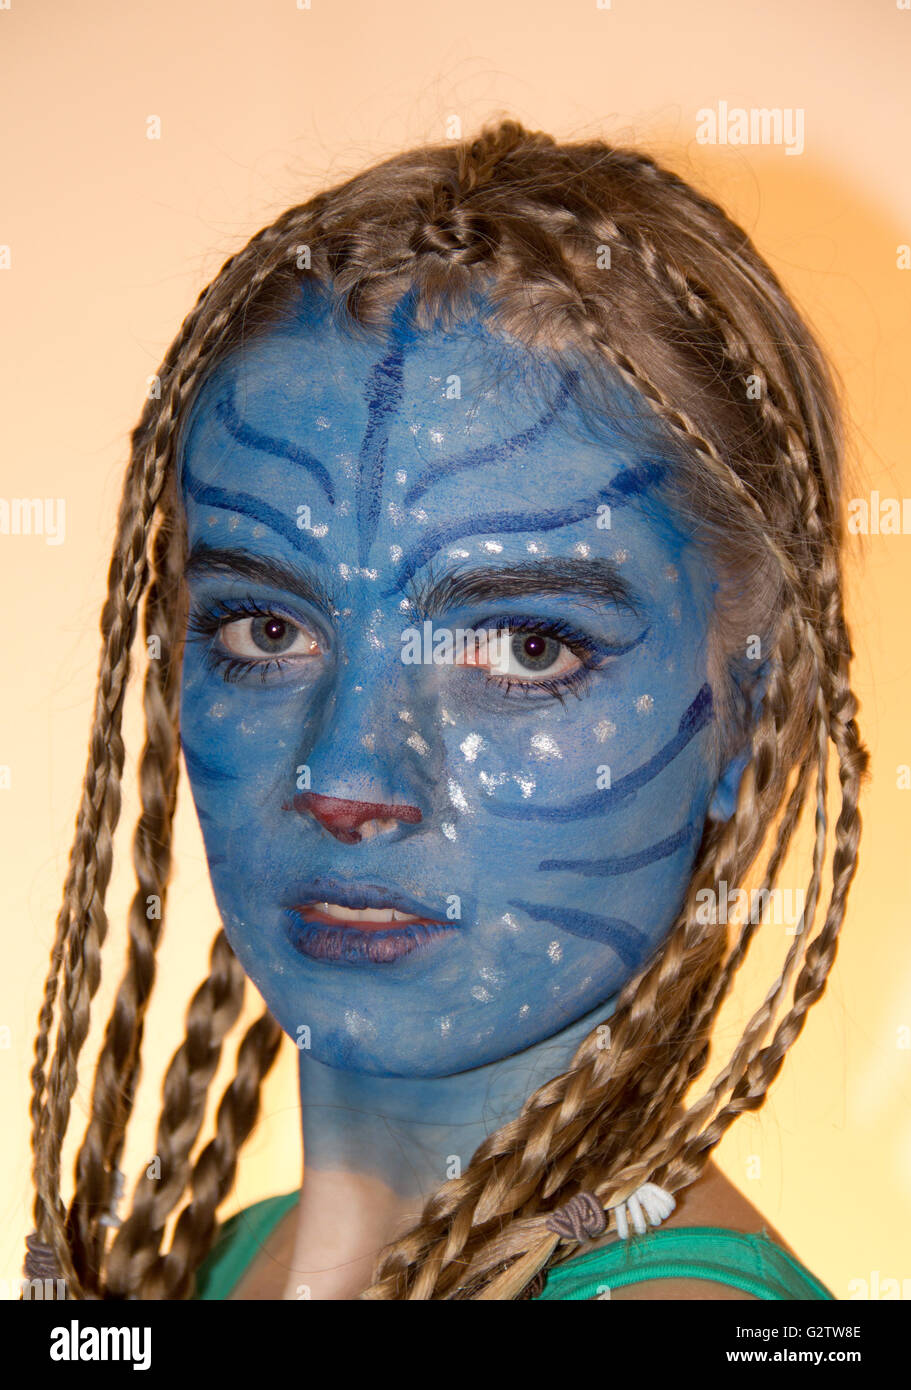 Maquillaje de avatar fotografías e imágenes de alta resolución - Alamy